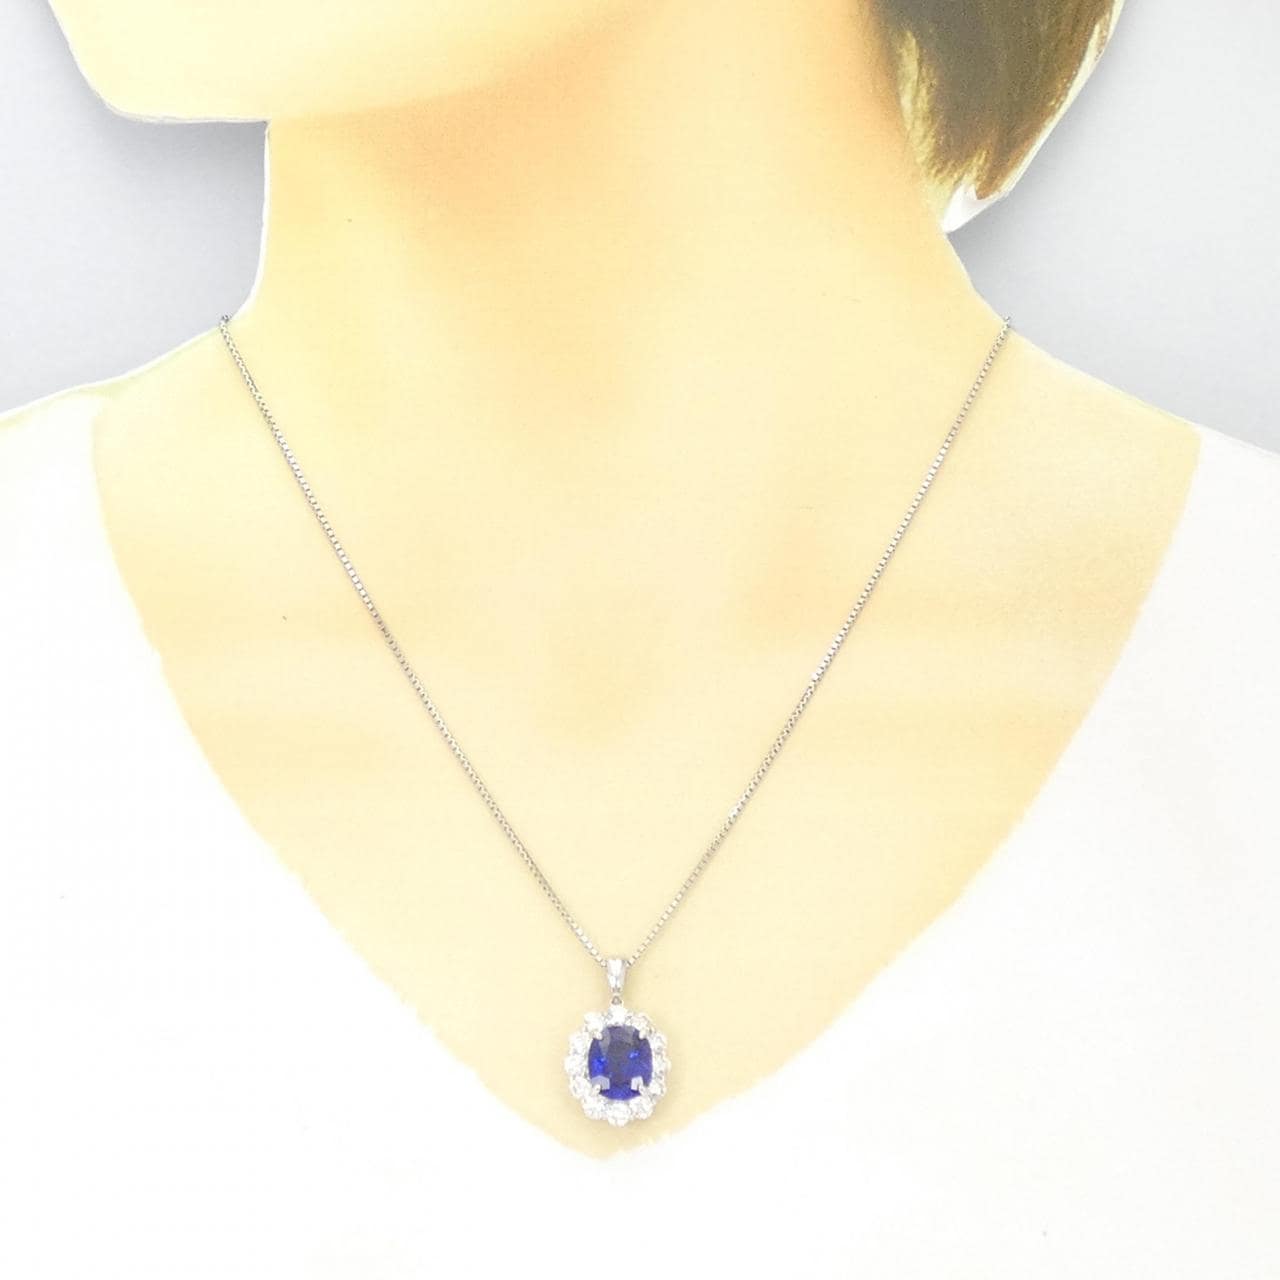 [再加工款] PT 蓝宝石项链 4.68CT 斯里兰卡制造